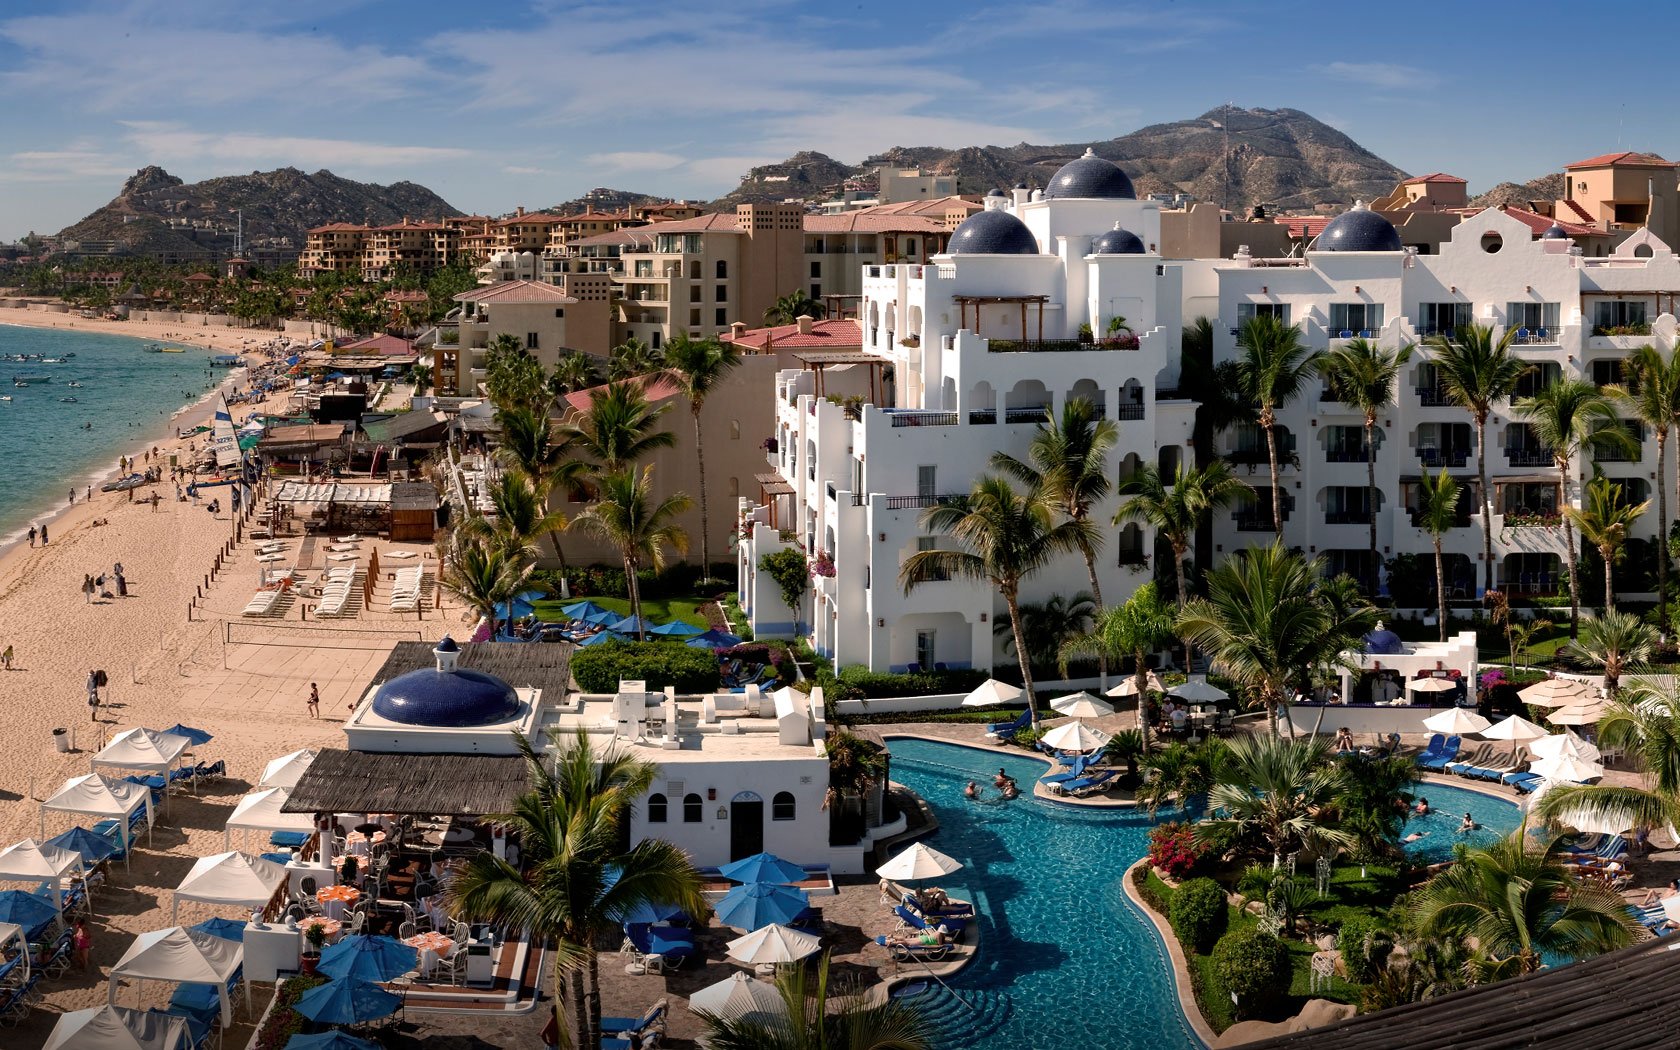 Mercado inmobiliario para el sector turístico en Baja California. 